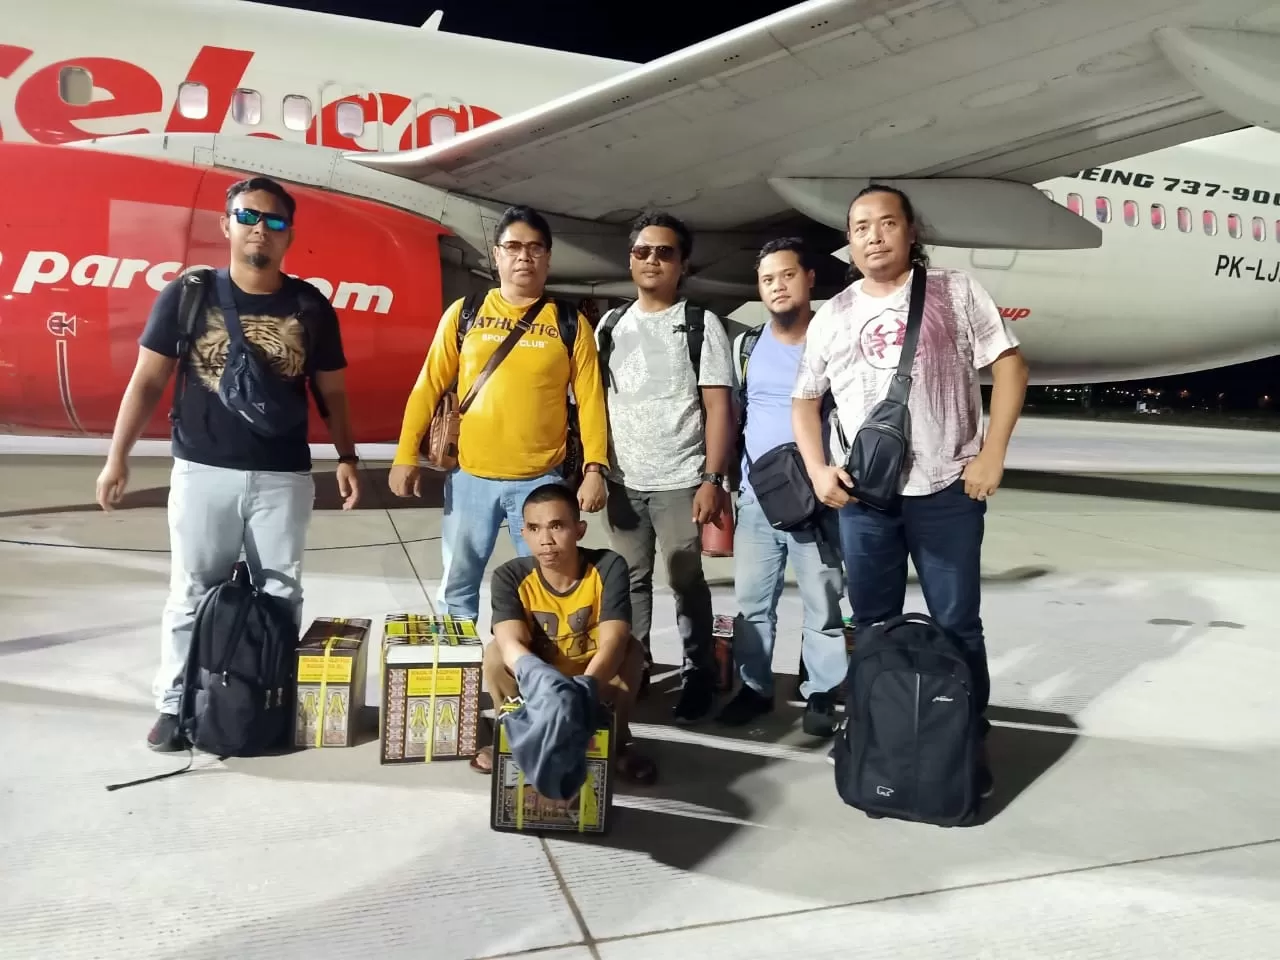 KEMBALI: Tersangka penipuan dan penggelapan, M Yusuf (jongkok) tiba di bandara Syamsudin Noor Banjarmasin di Banjarbaru pada Kamis (27/2) malam usai dirinya dijemput rim Resmob Polres Banjarbaru dari Sulawesi Selatan. | Foto: Polres Banjarbaru for Radar Banjarmasin